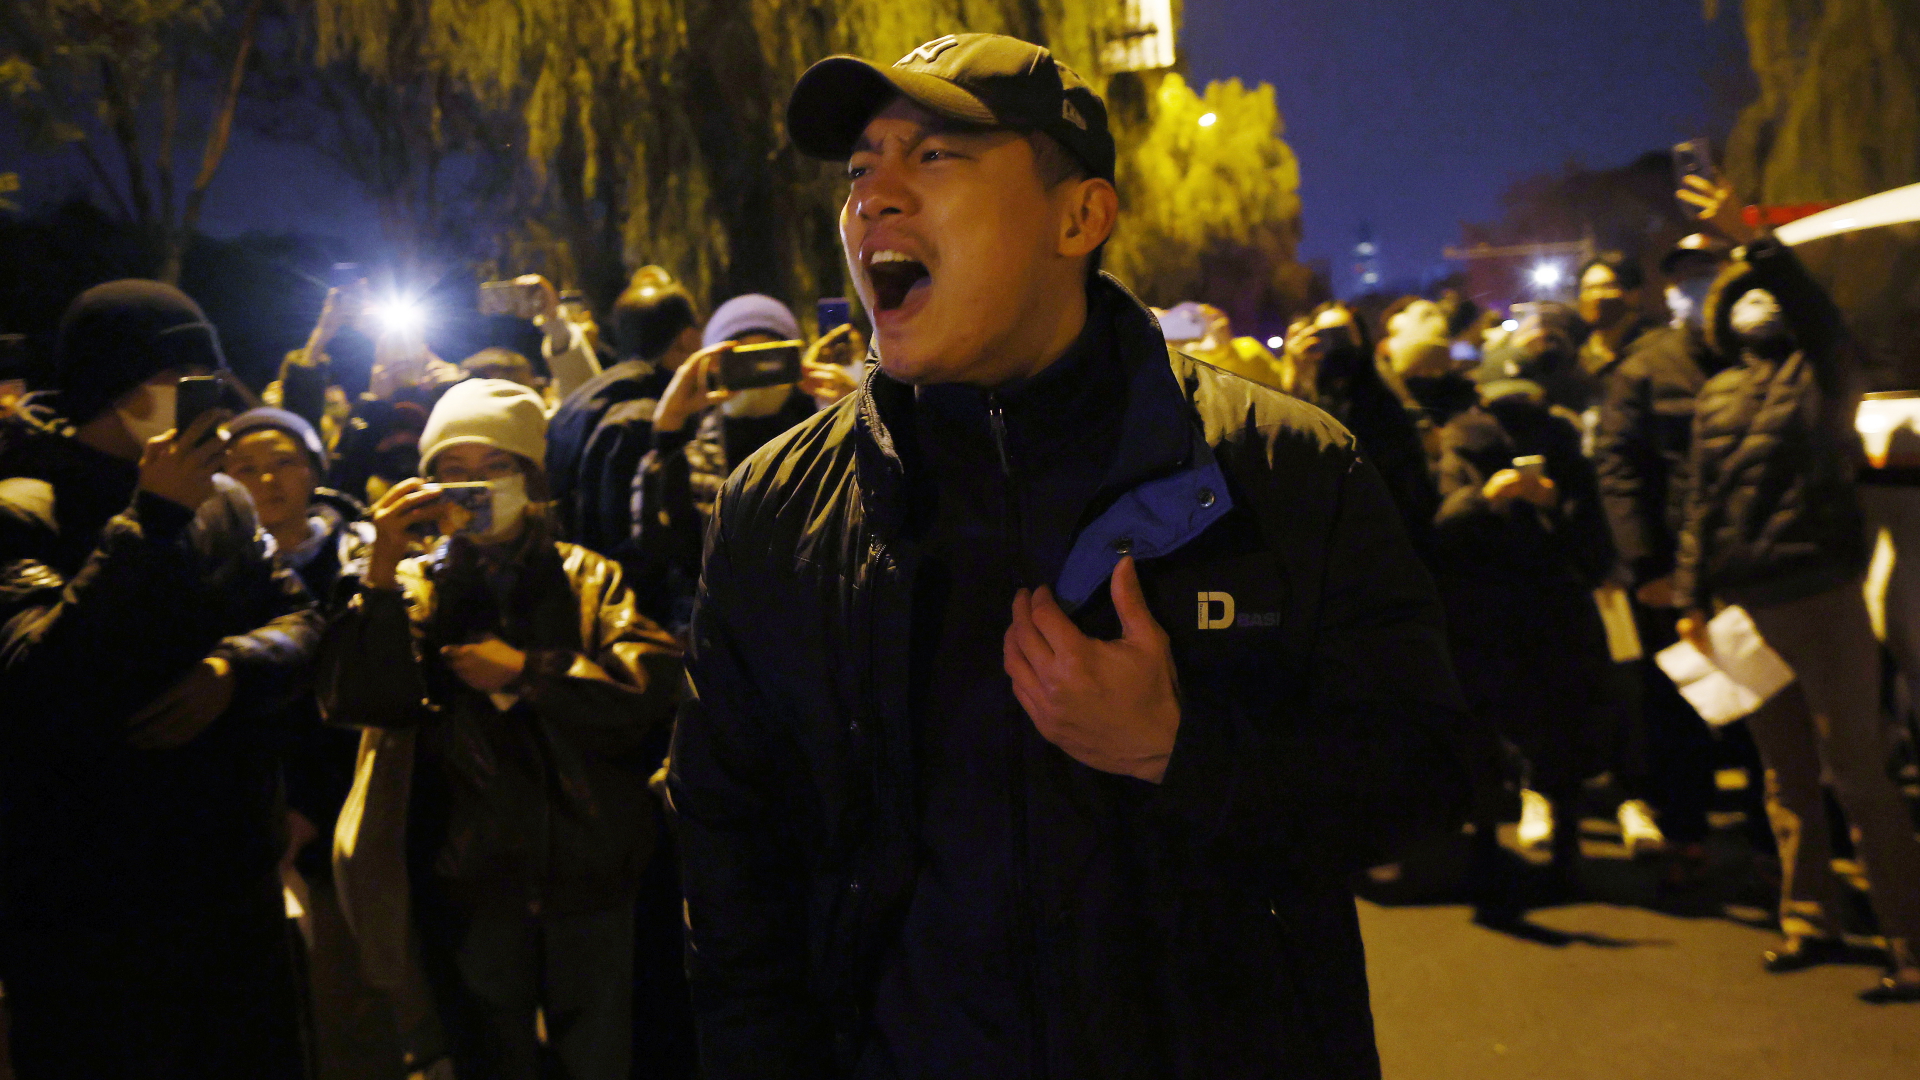 Proteste in China: "Wir sind hier, weil wir mutig sind"